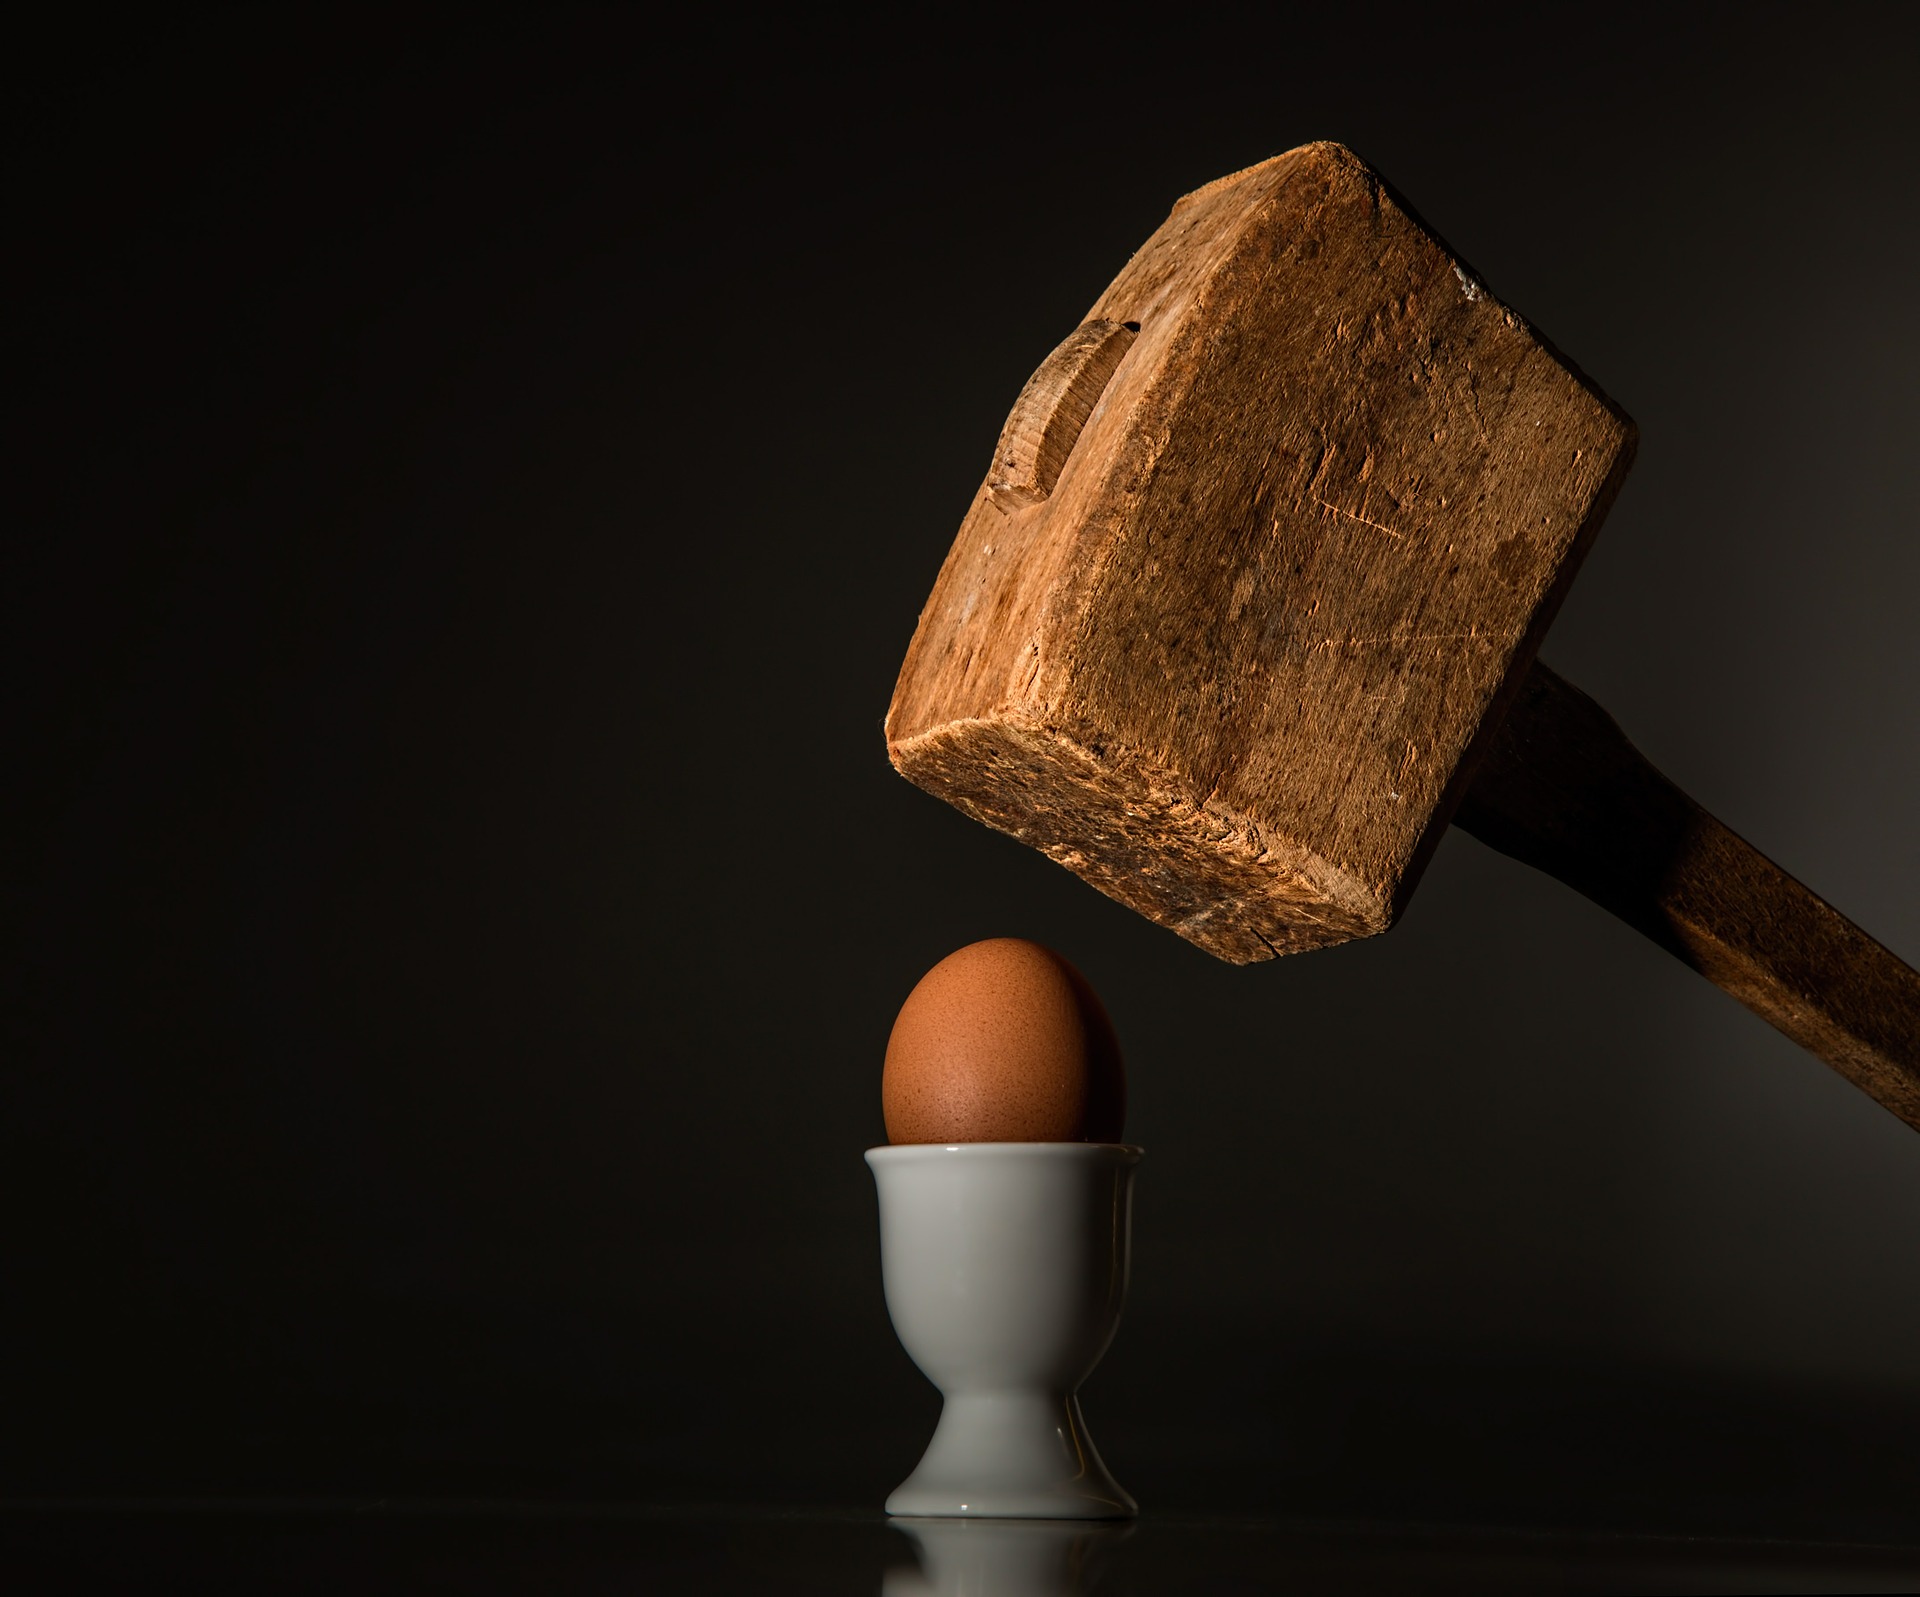 Wooden Mallet Hitting Egg